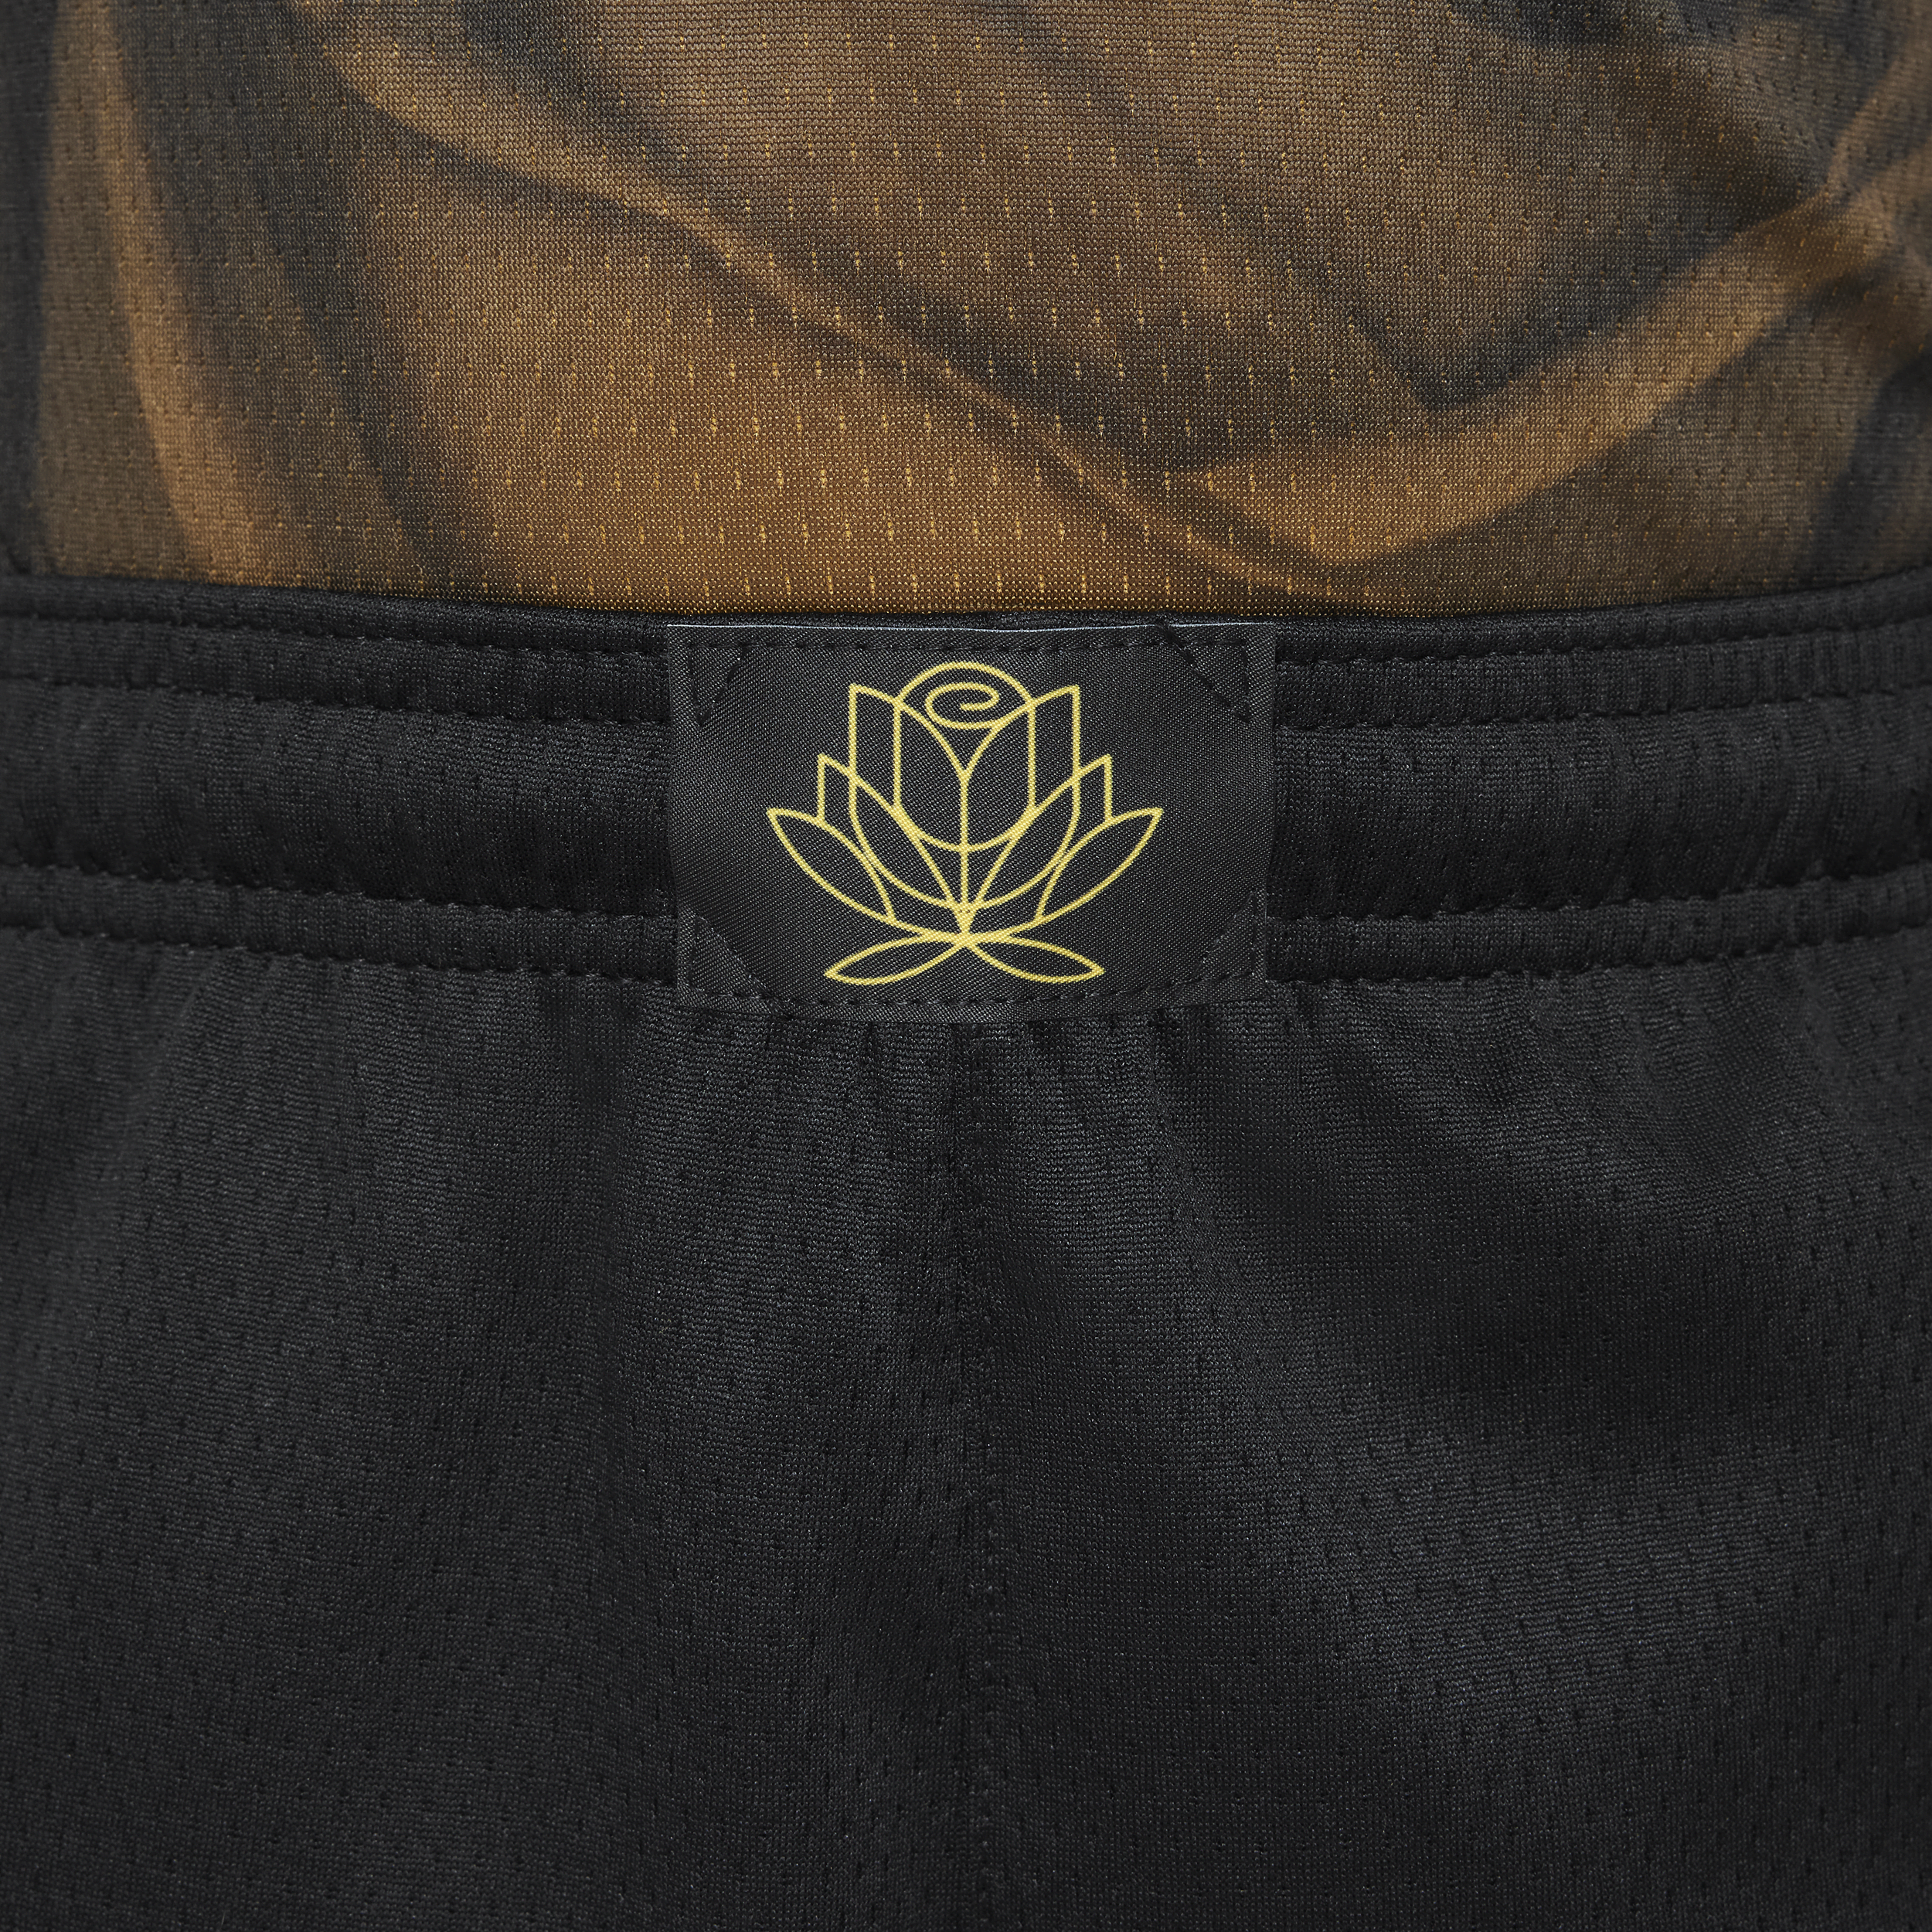 Nike Golden State Warriors Swingman NBA-shorts met Dri-FIT voor kids Zwart